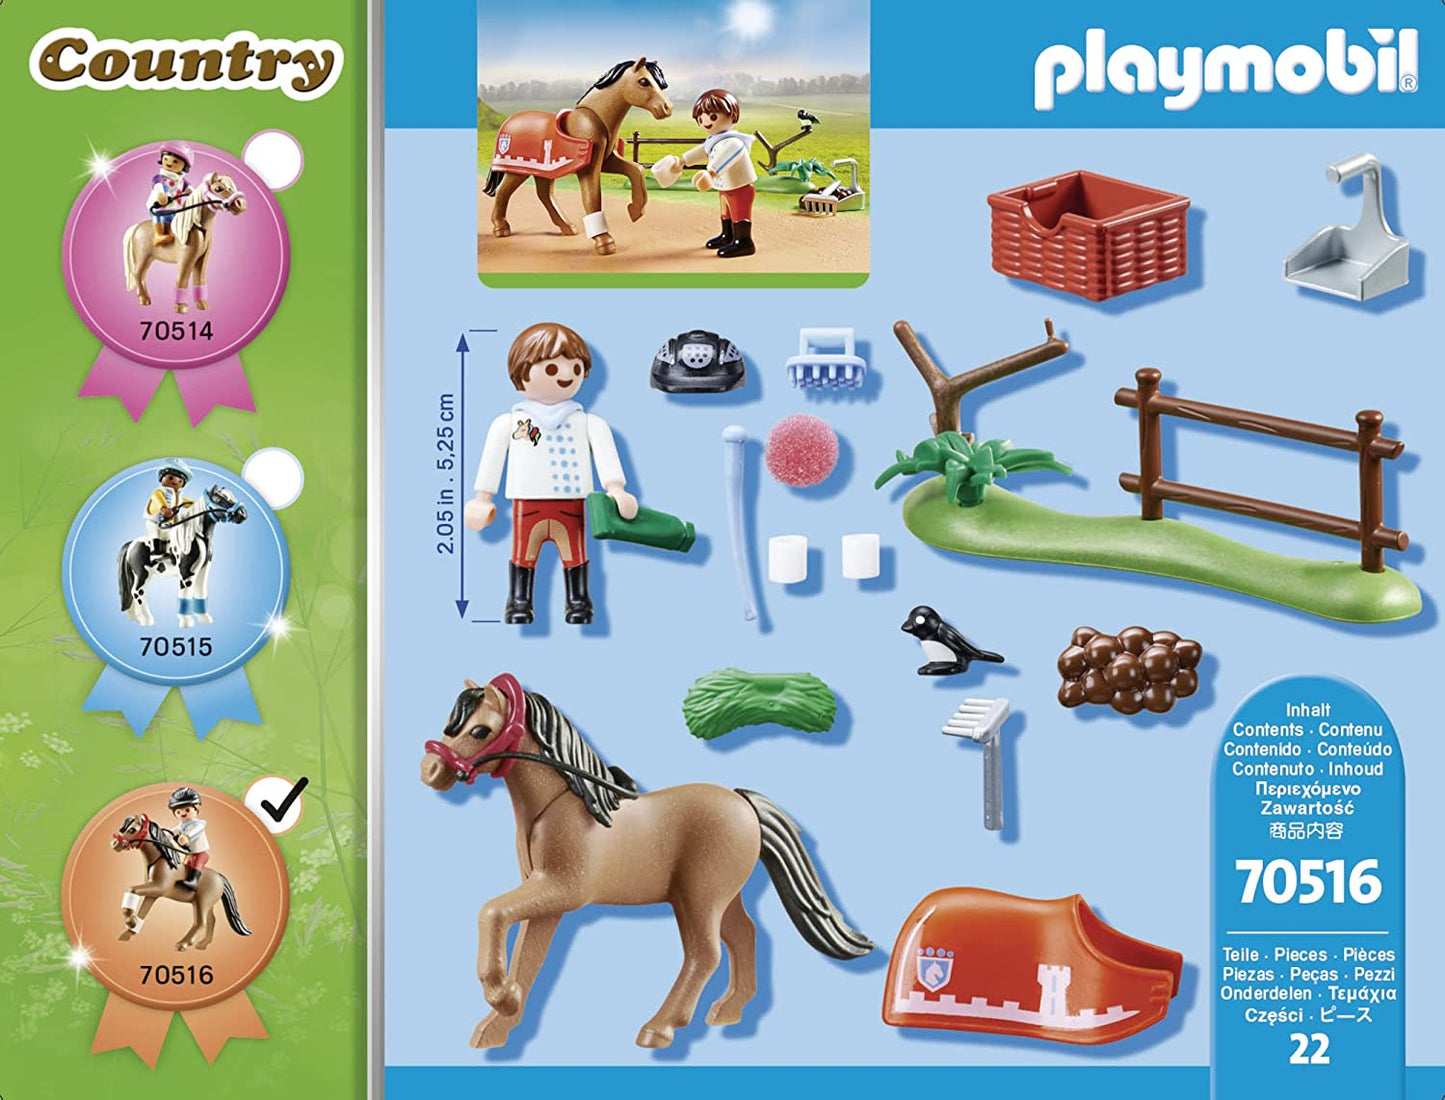 Playmobil - Collectible Connemara Pony